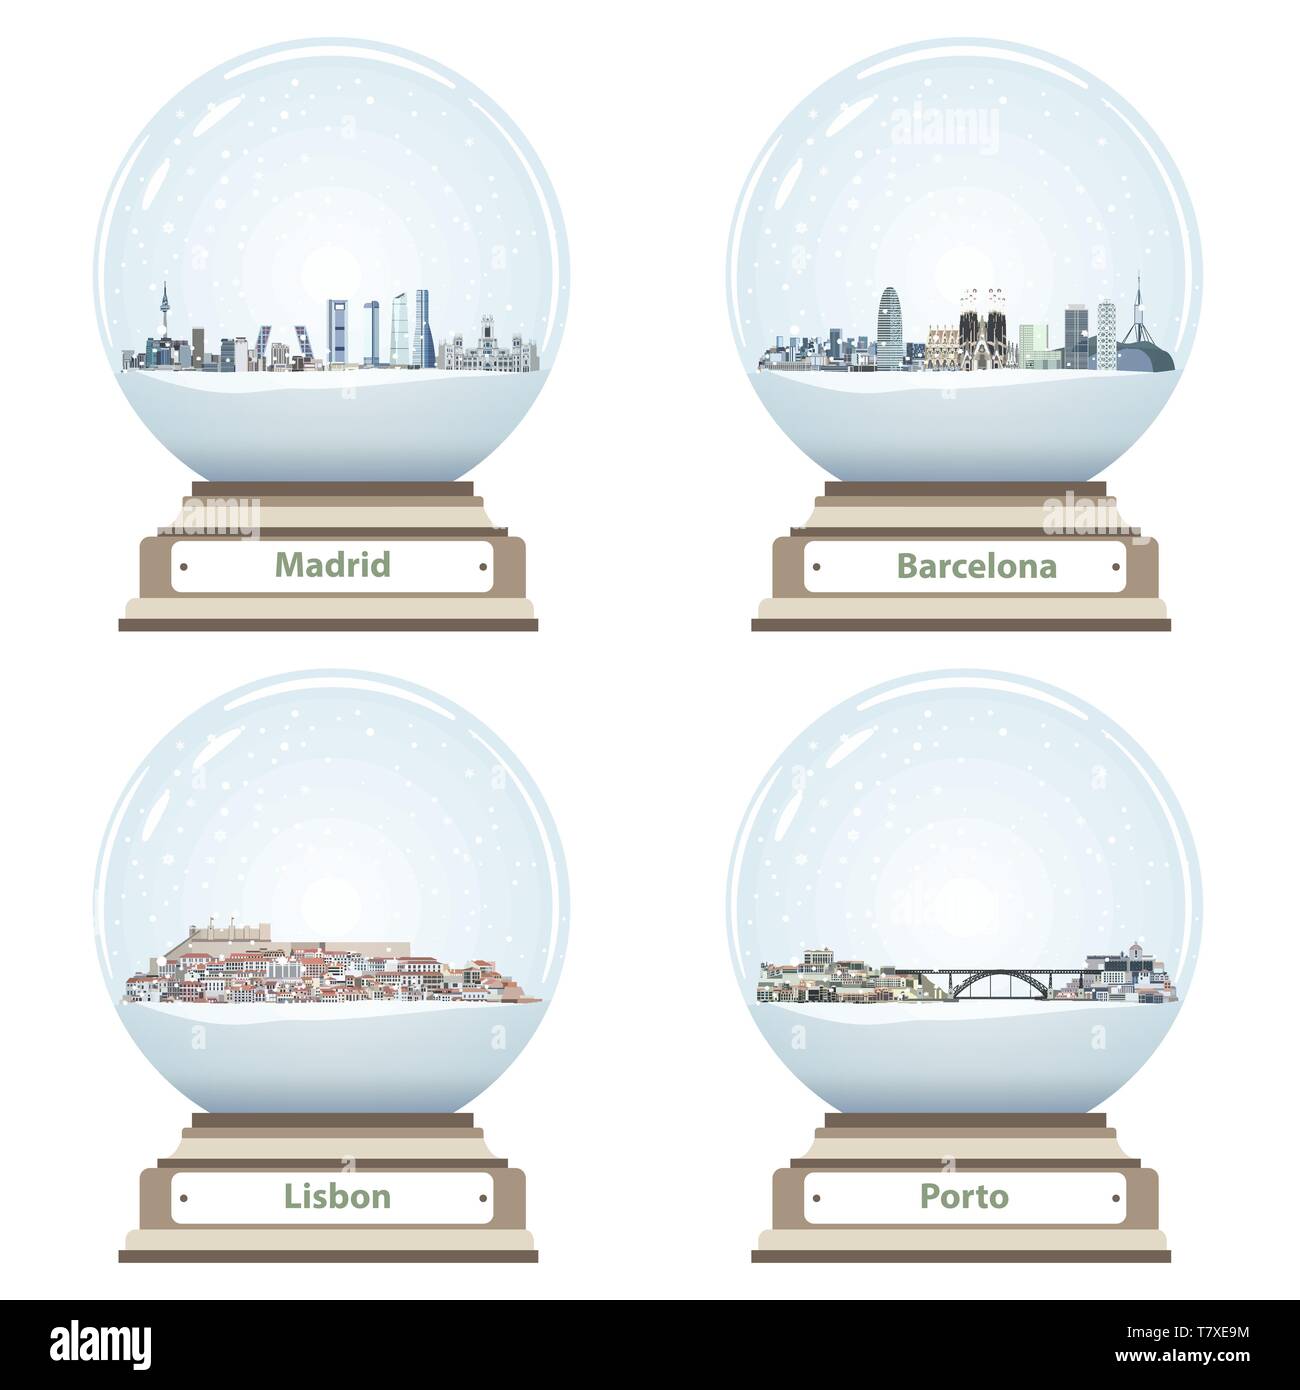 Vettore globi di neve con Madrid e Barcellona, Lisbona e Porto abstract dello skyline della citta' all'interno Illustrazione Vettoriale